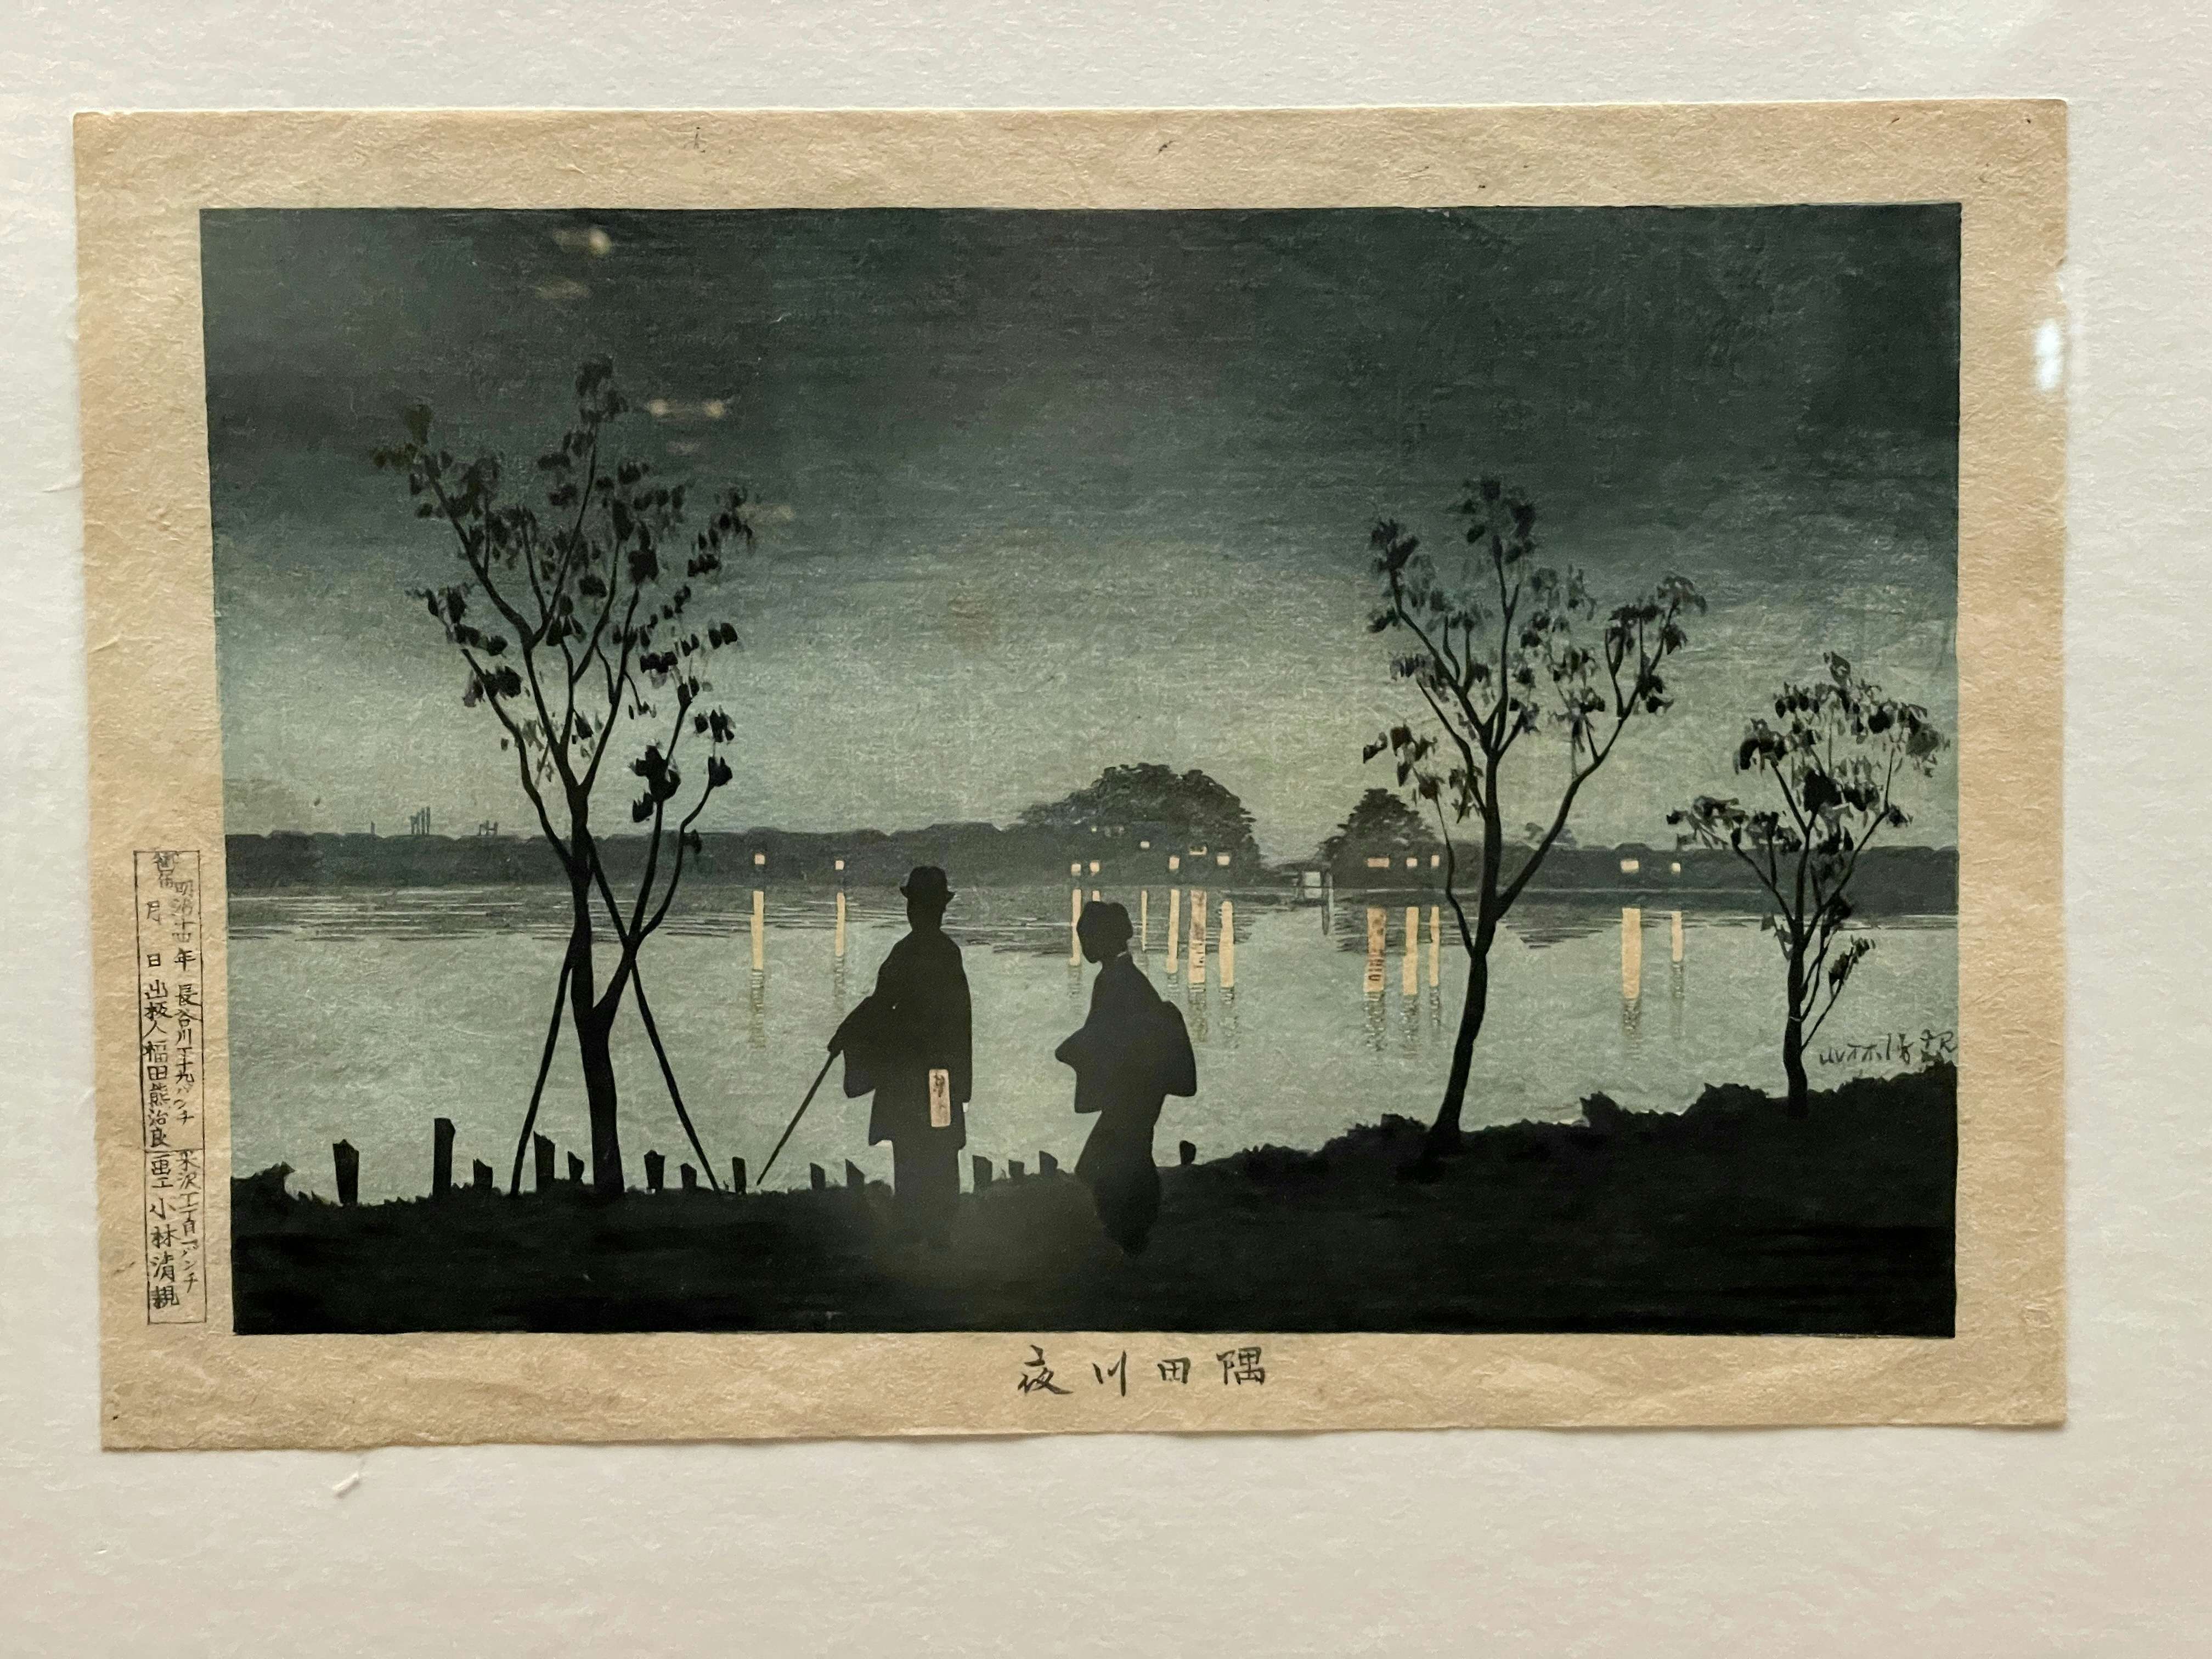 3人の絵師が紡いだ「光線画」の世界。太田記念美術館で見る闇の色、光